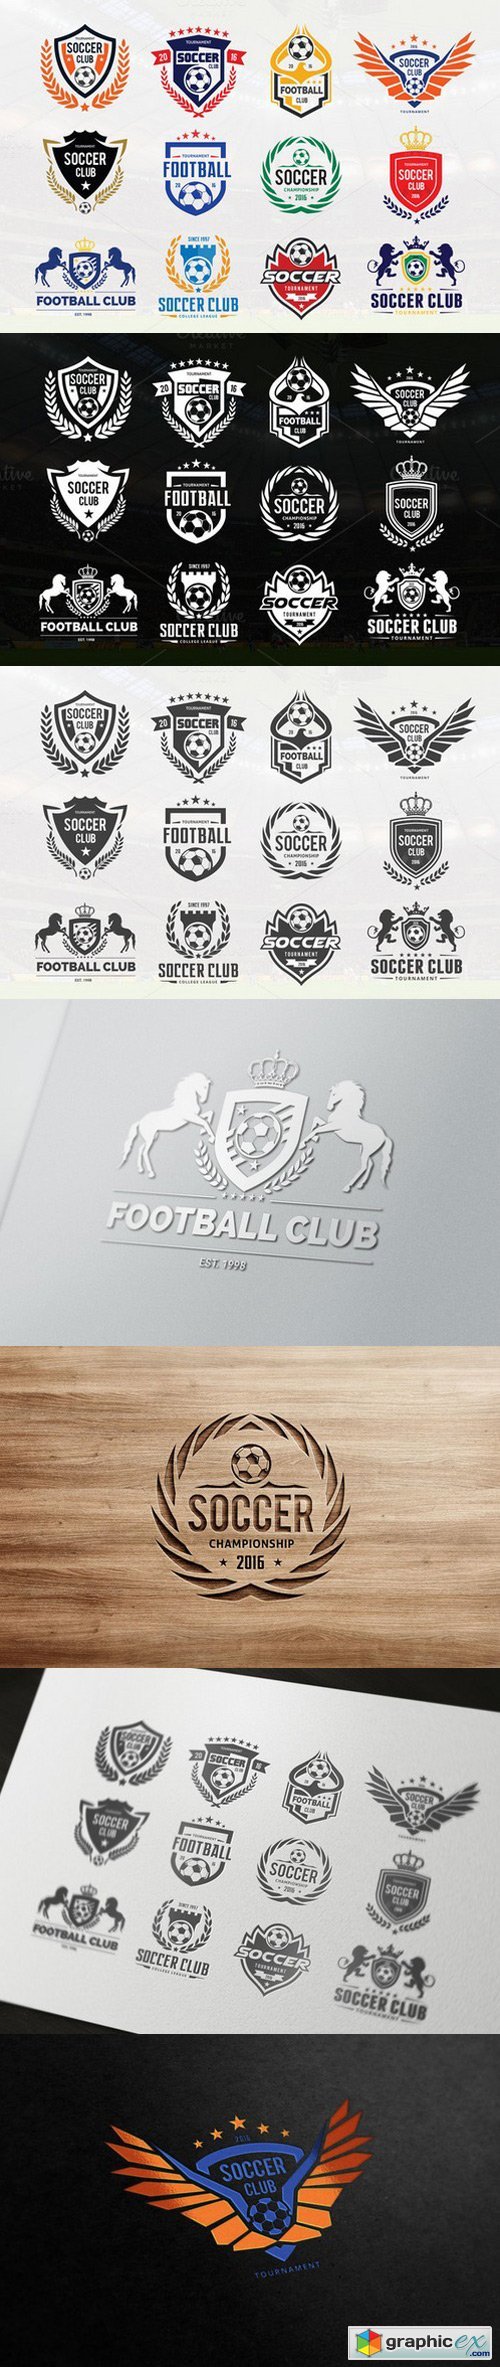 Soccer Logo Football logo collection